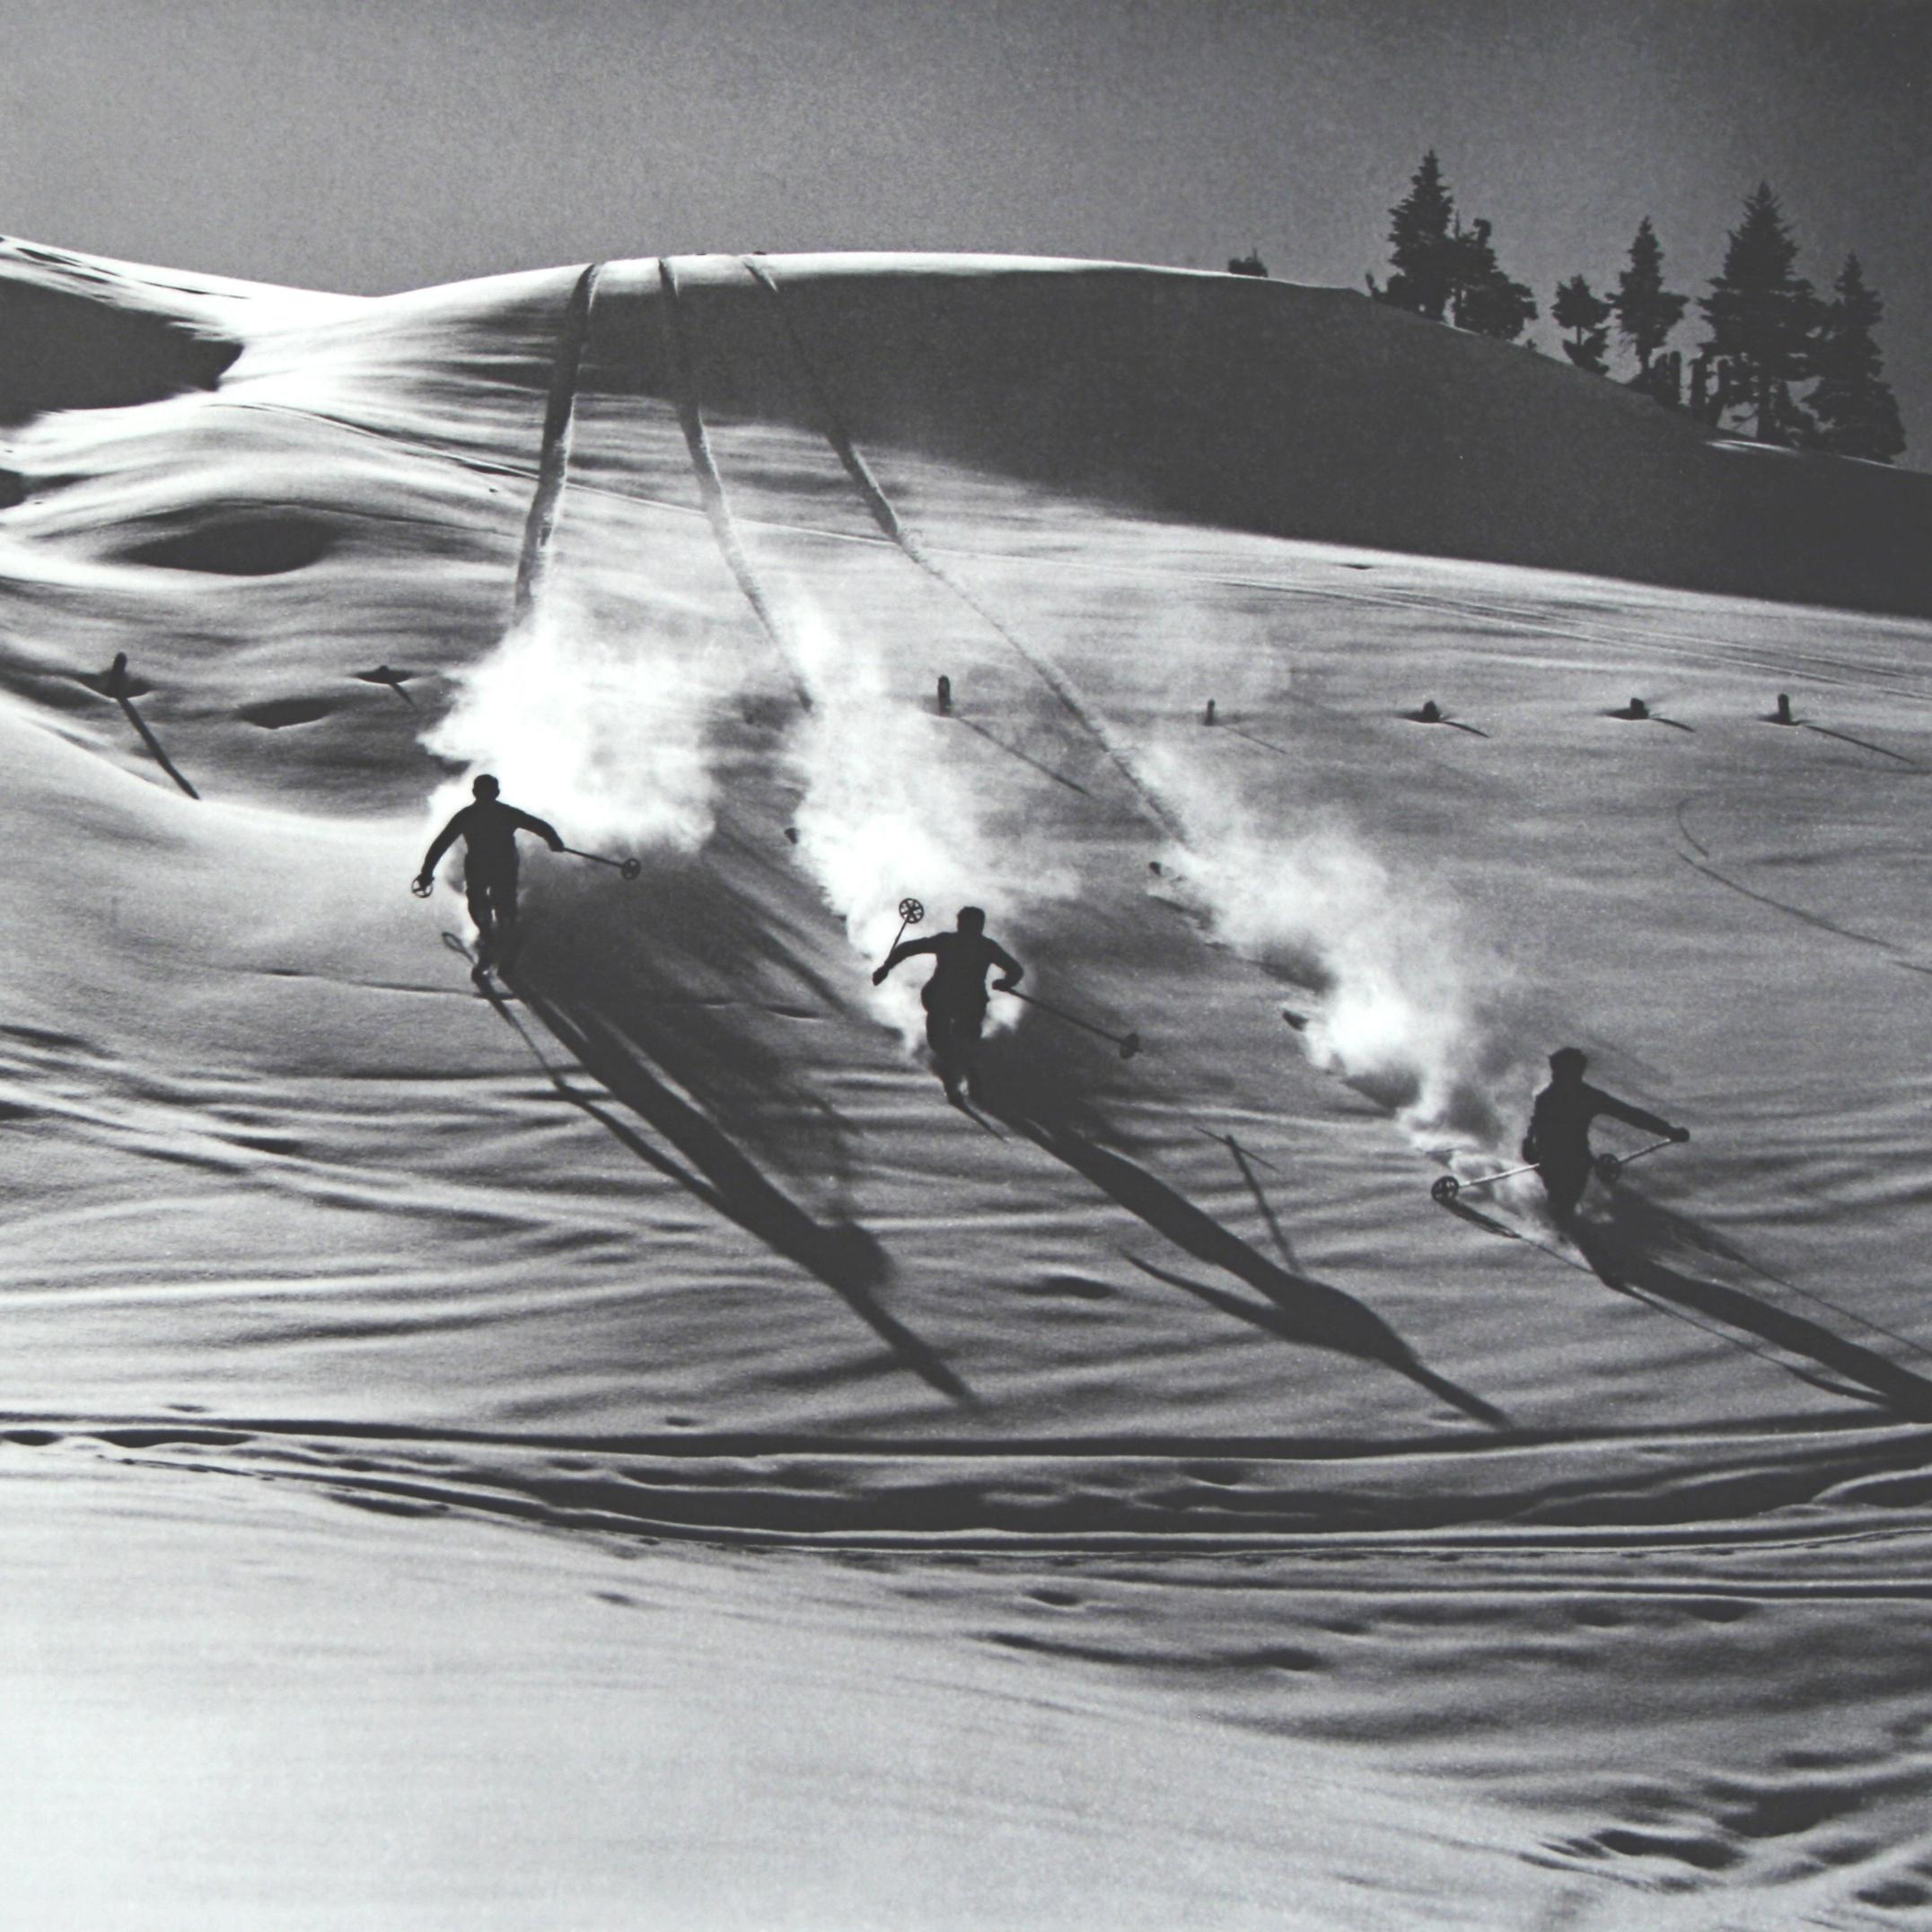 Fotografía de esquí de época, Fotografía antigua de esquí alpino, 'Descenso en la nieve polvo' Británico en venta